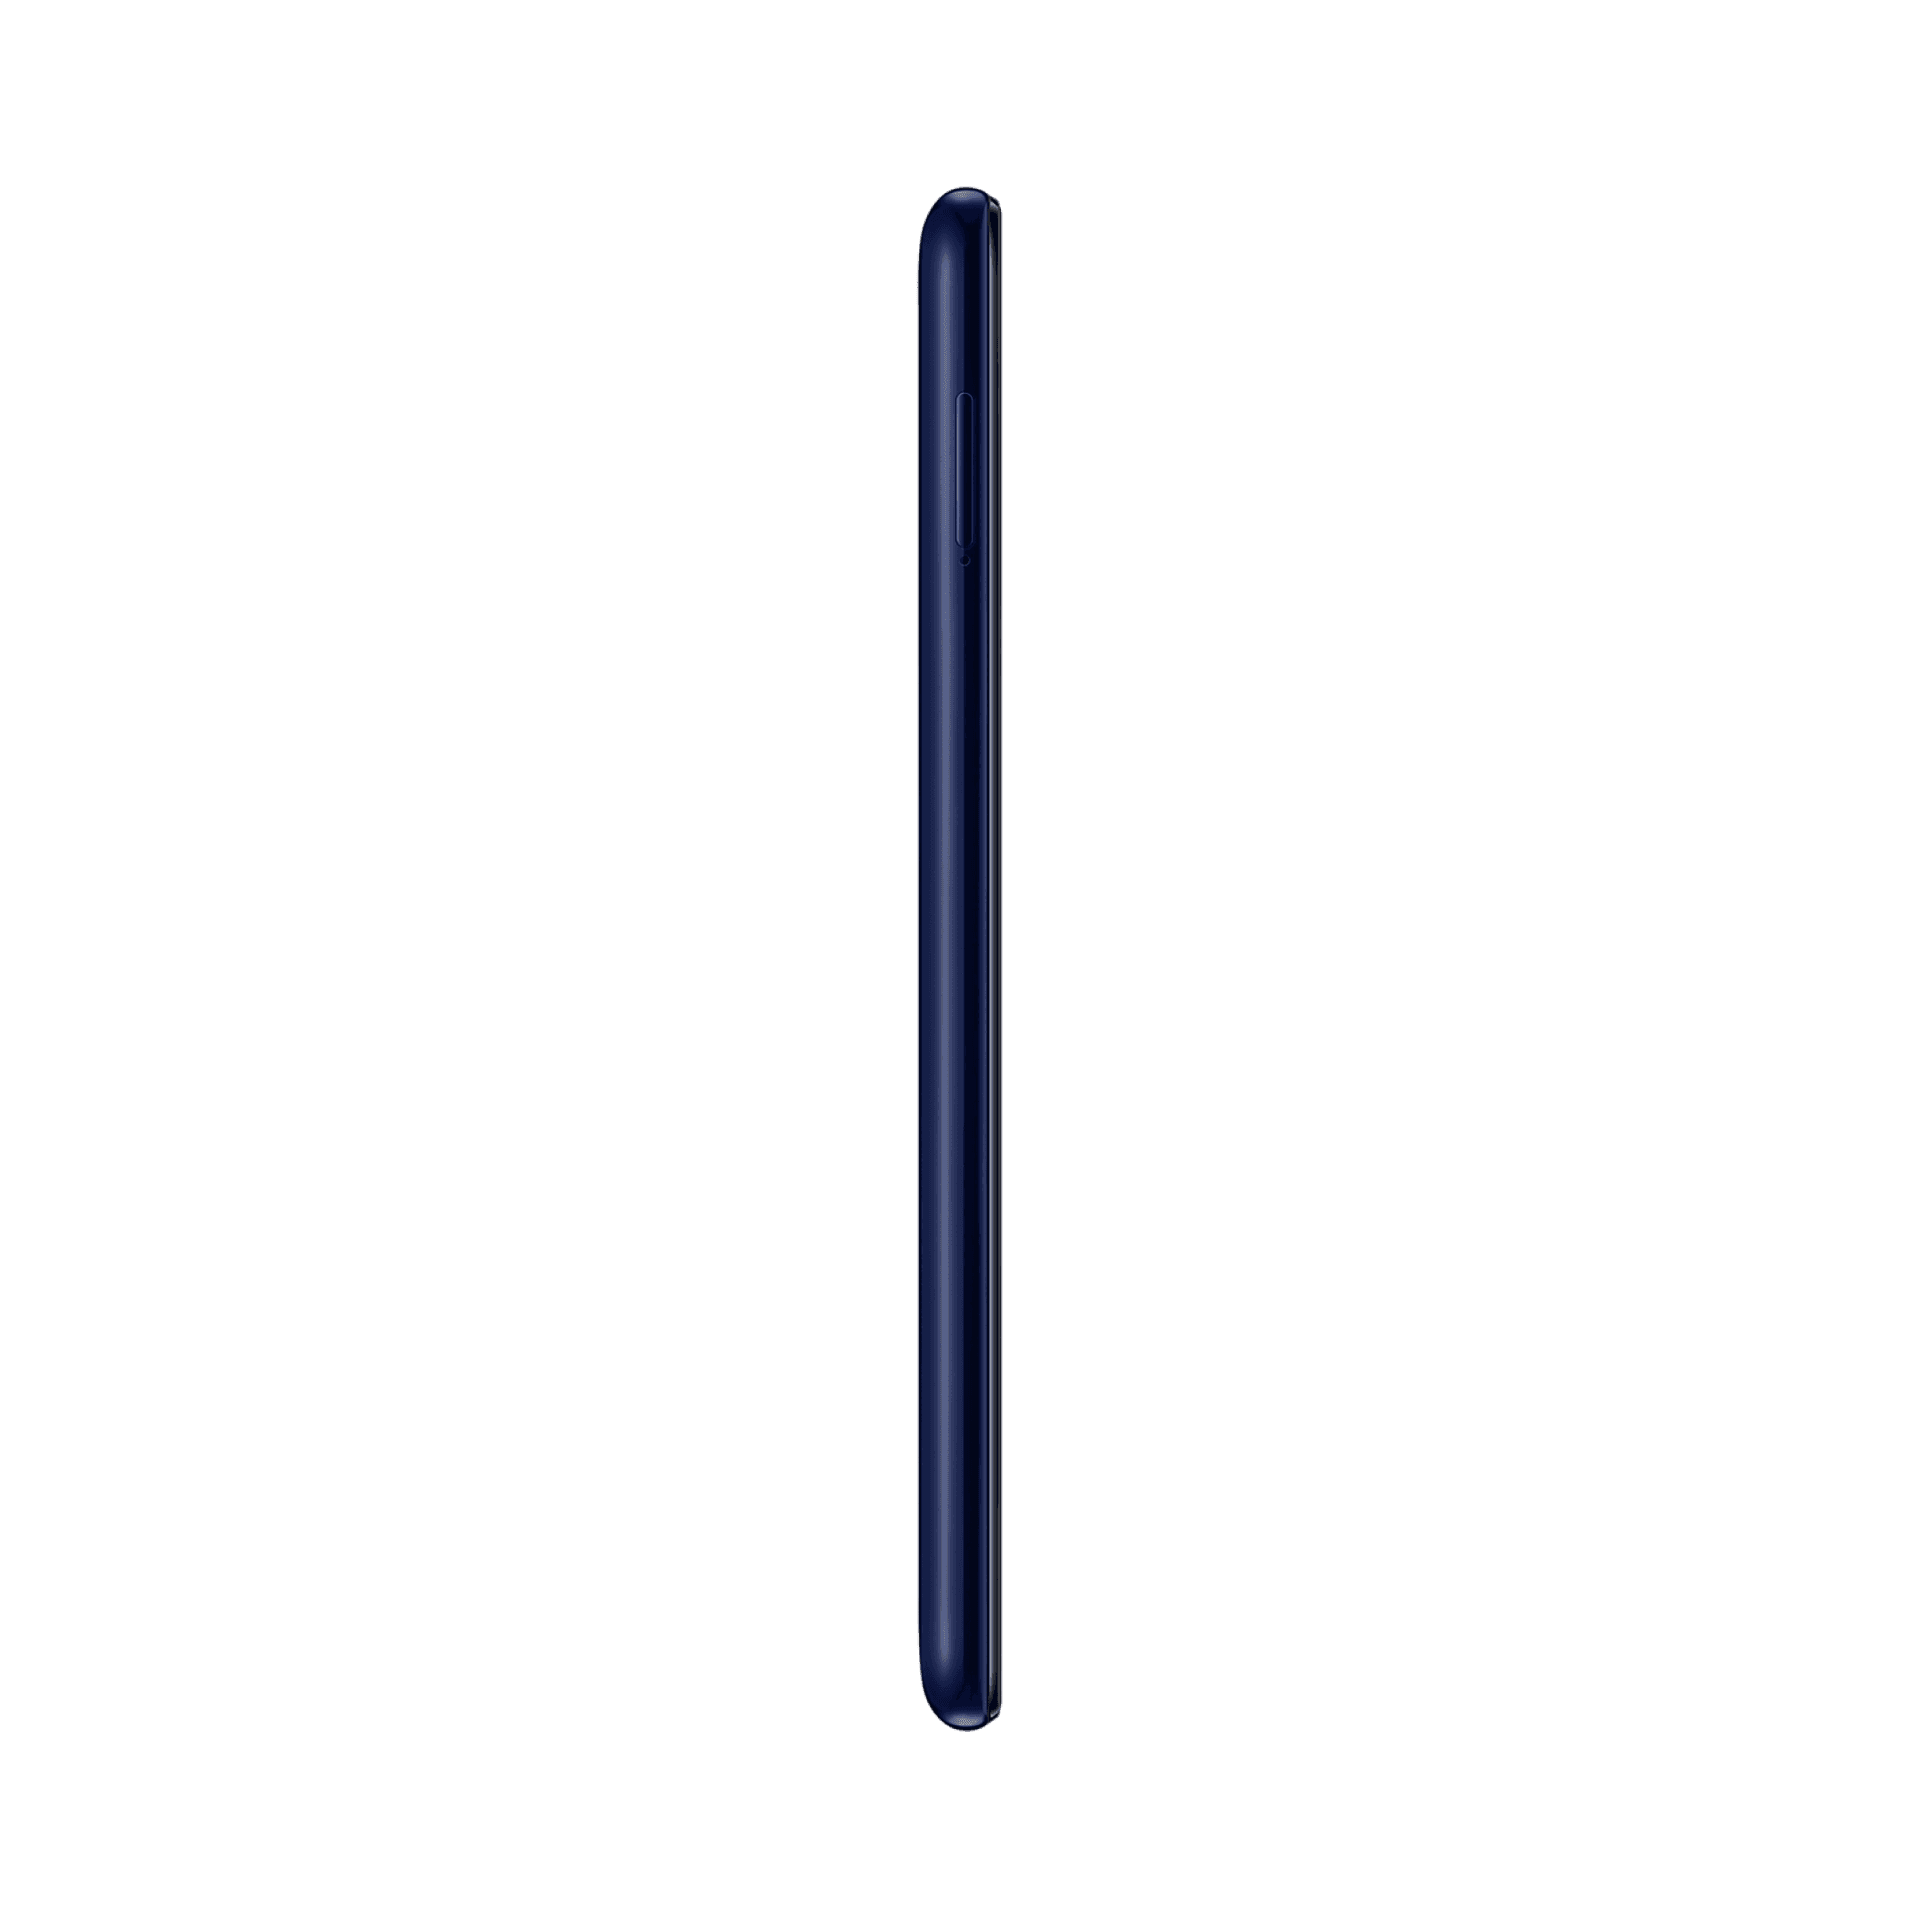 Samsung Galaxy M21 - 64 GB - Gece Mavisi